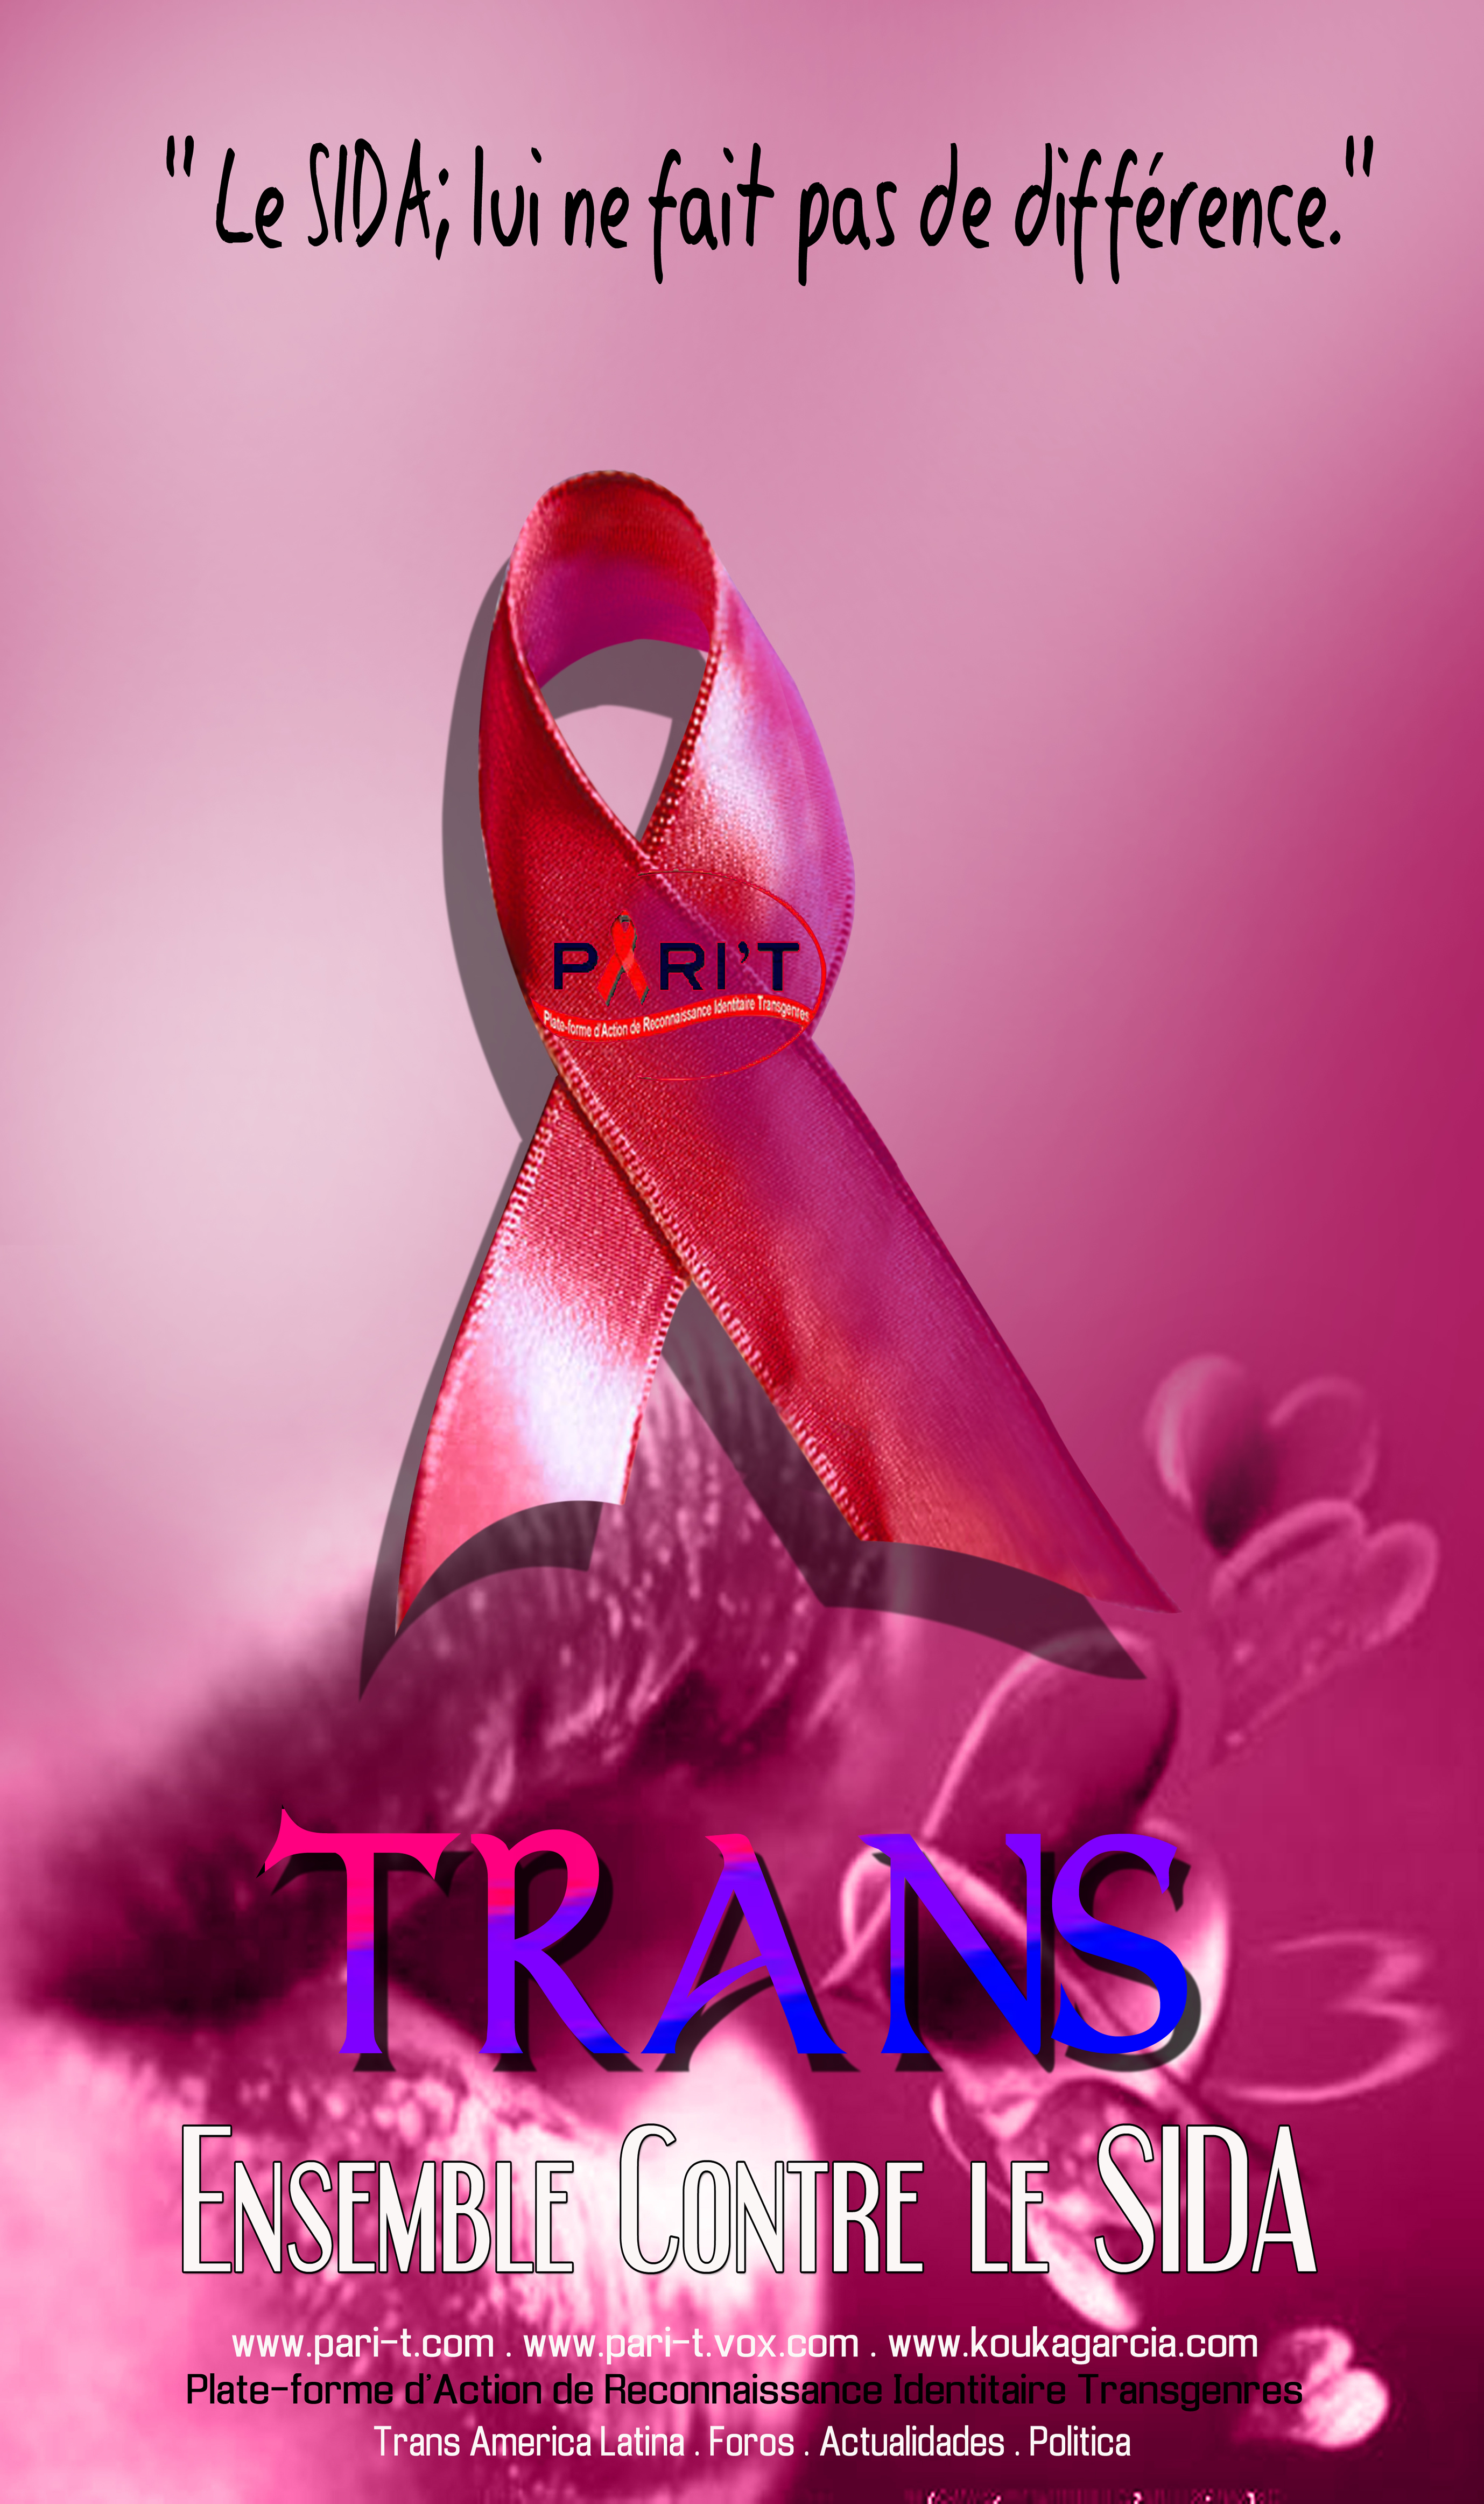 Trans Ensemble Contre Le SIDA (Pari-t.com)